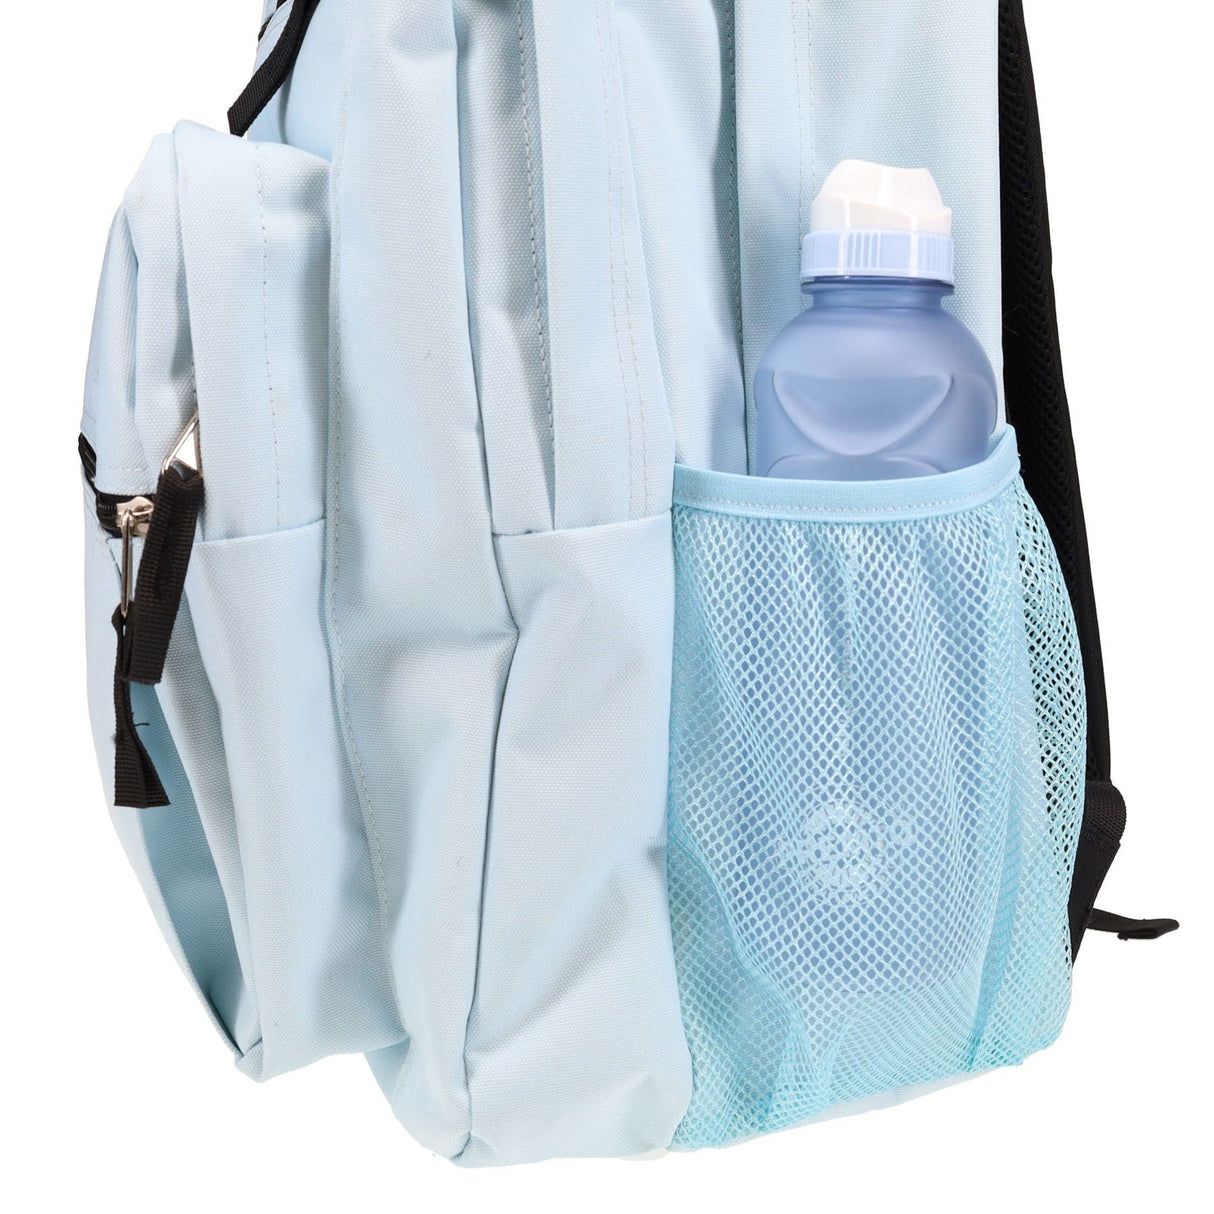 Premto 34L Backpack - Cornflower Blue | Stationery Shop UK